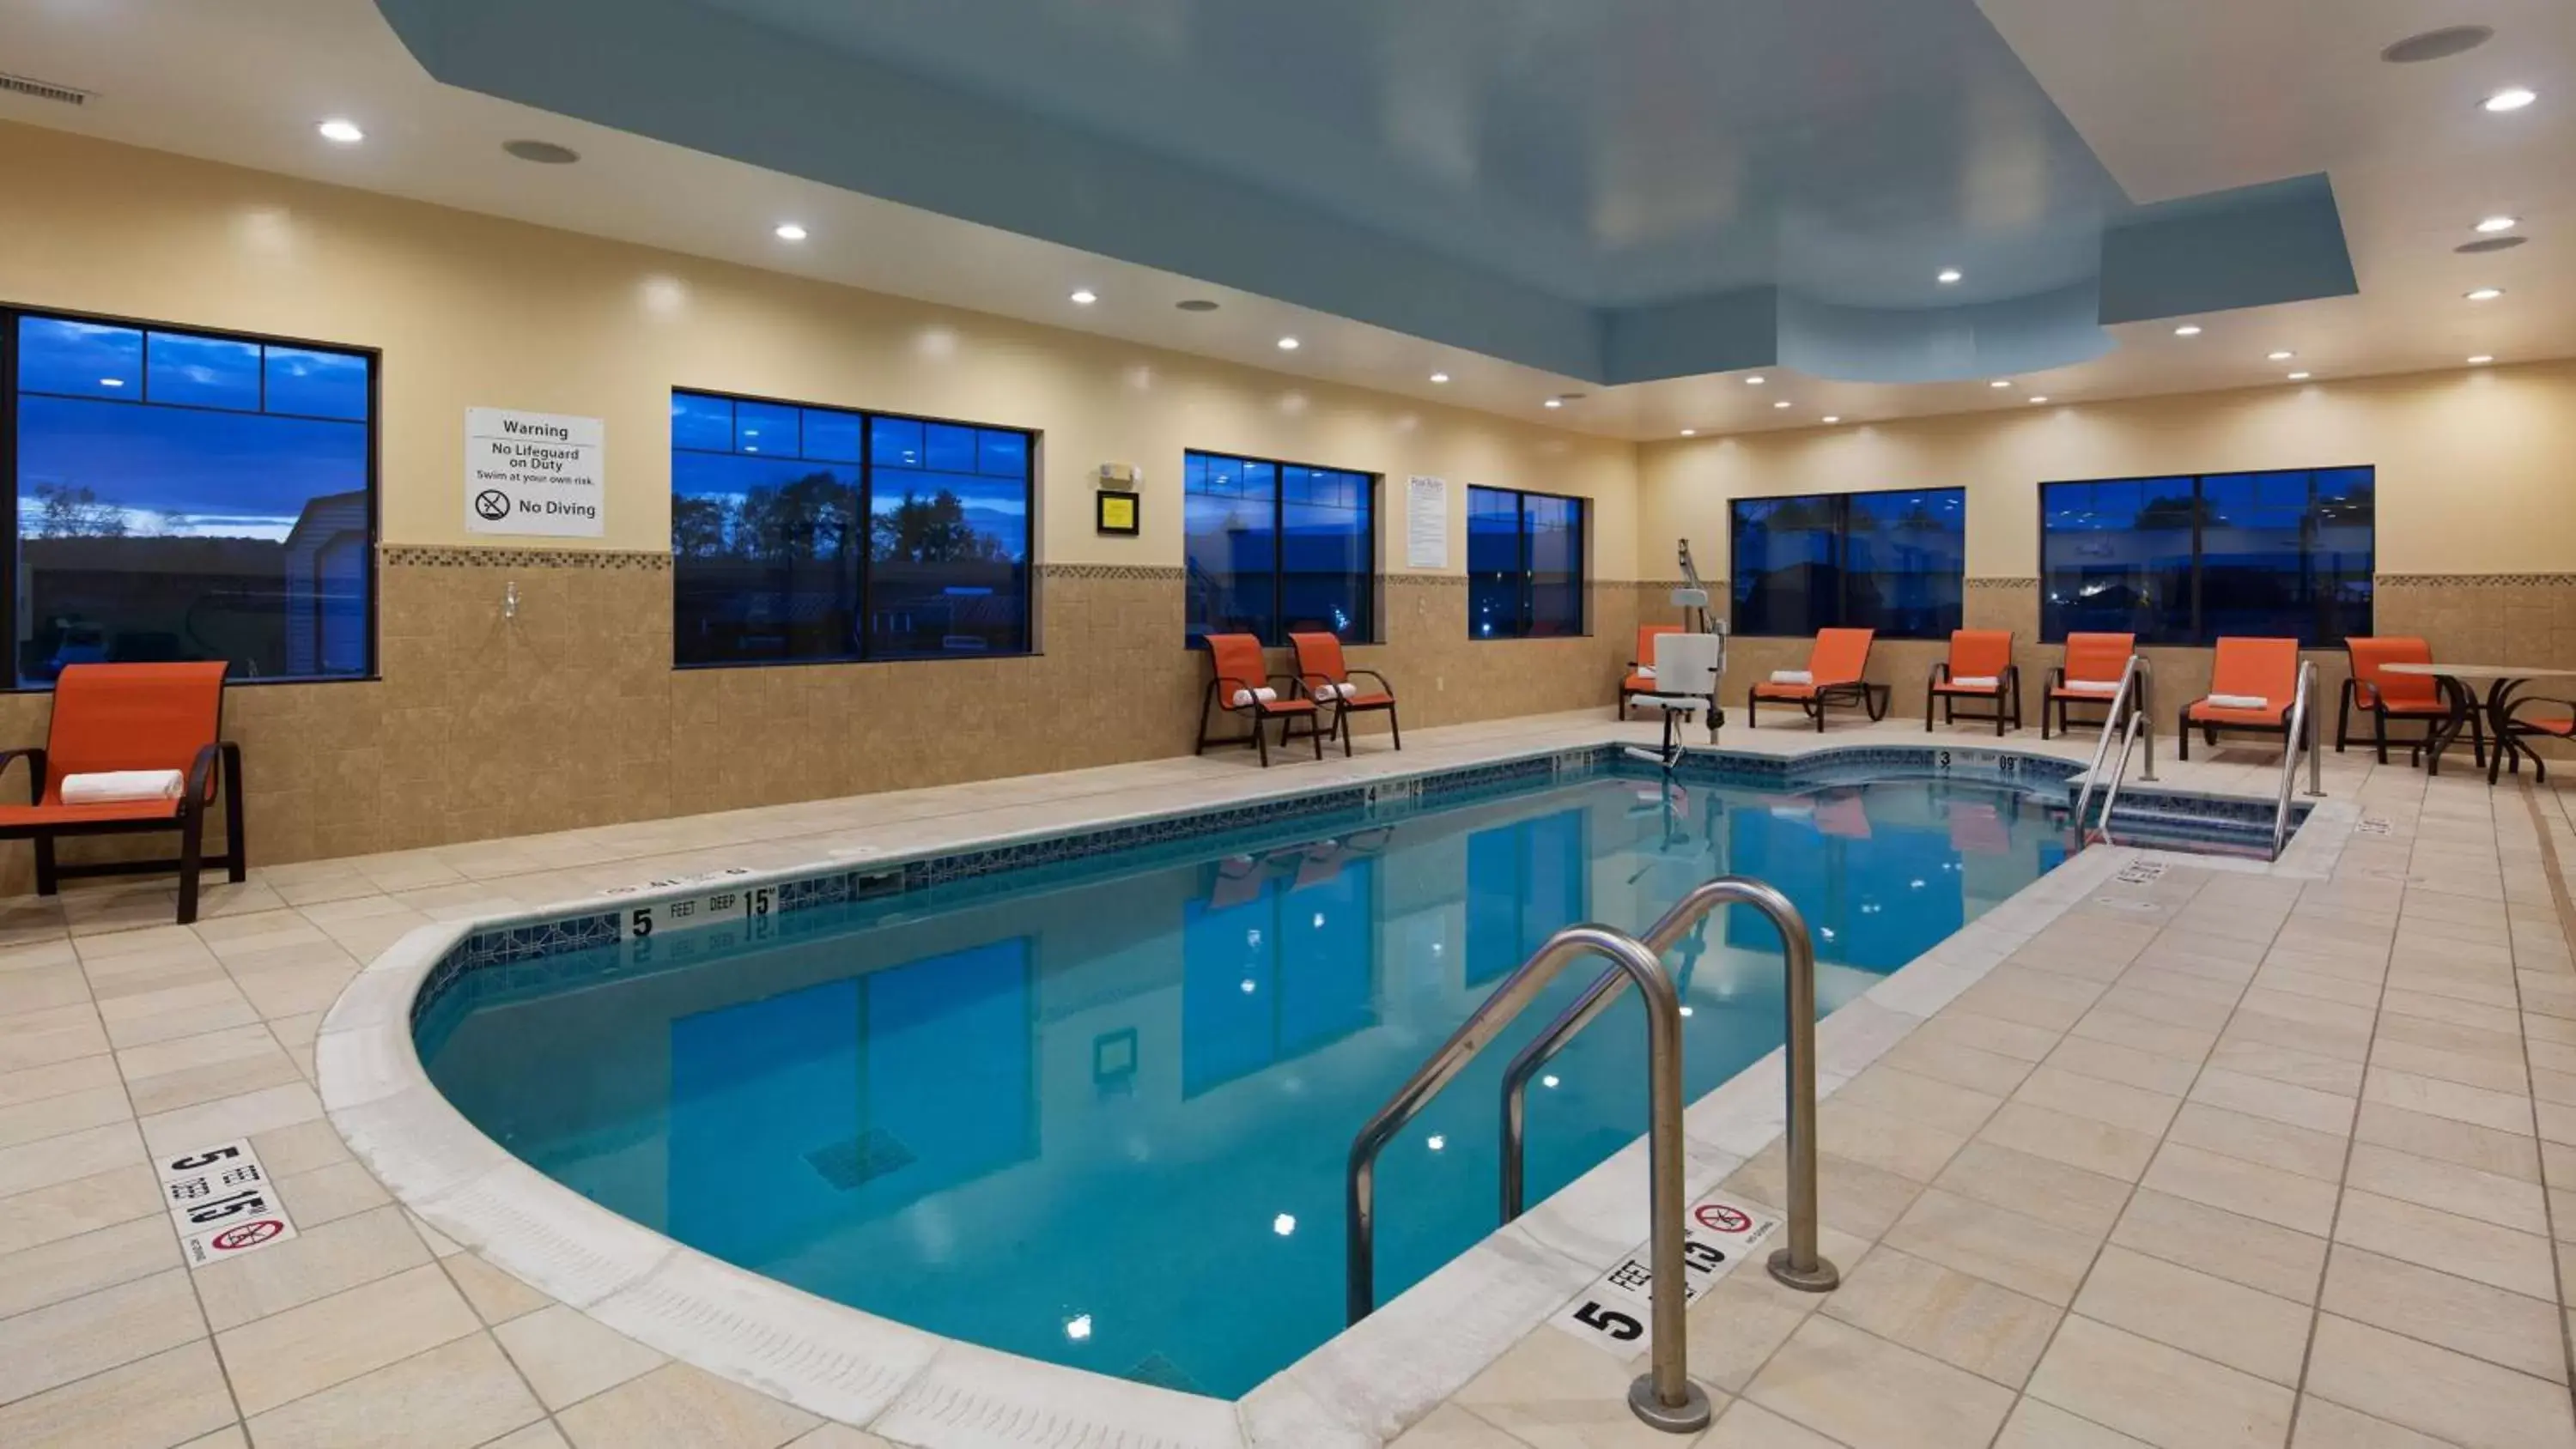 On site, Swimming Pool in Best Western Plus Finger Lakes Inn & Suites